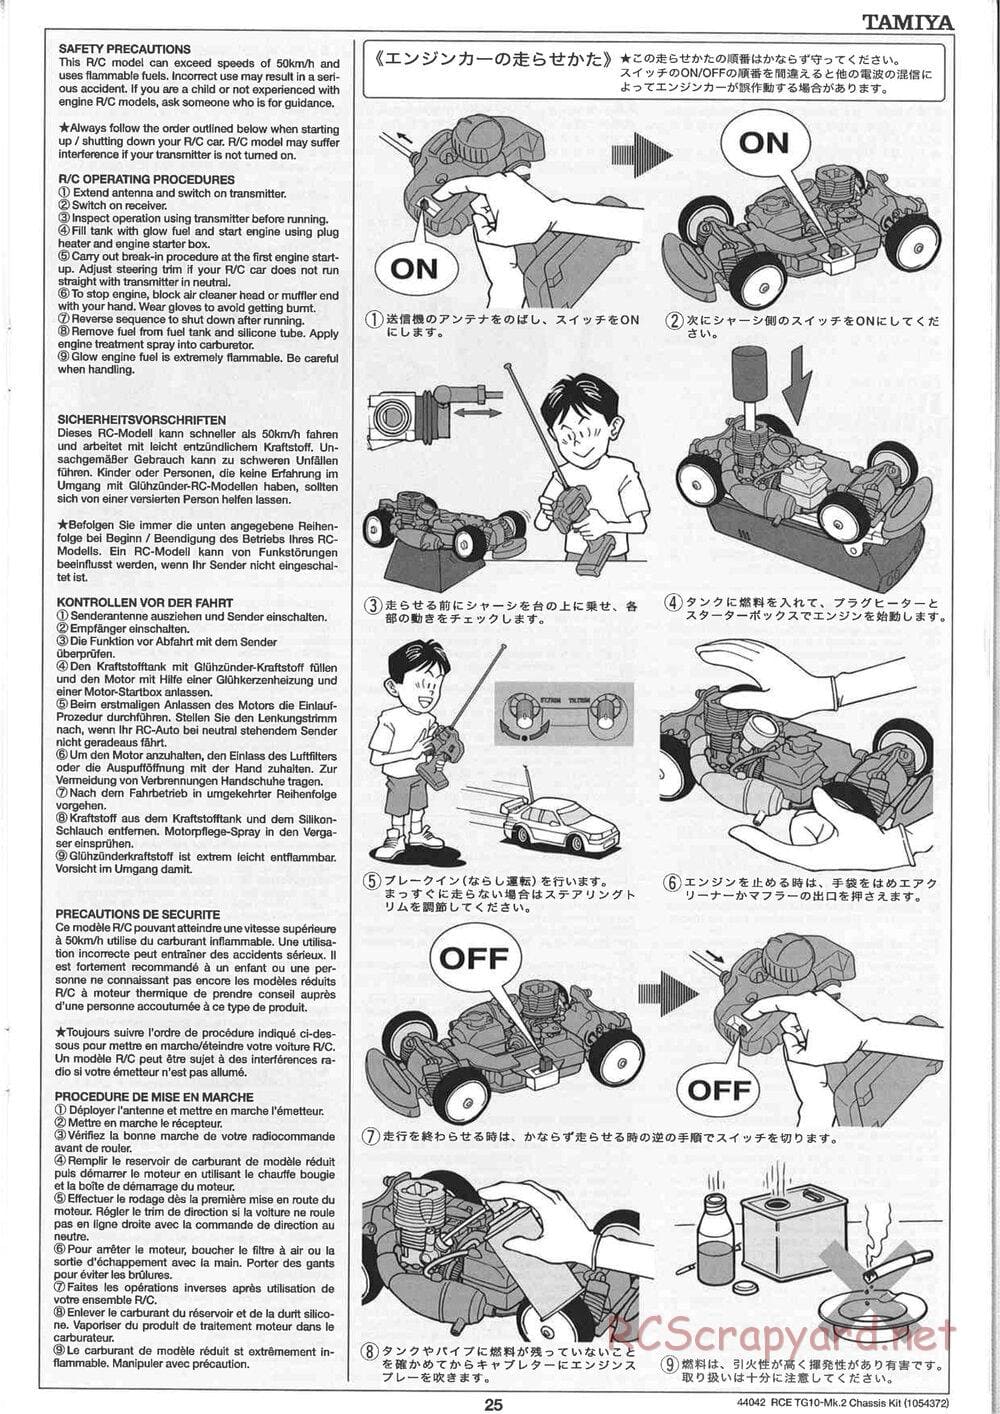 Tamiya - TG10 Mk.2 Chassis - Manual - Page 25